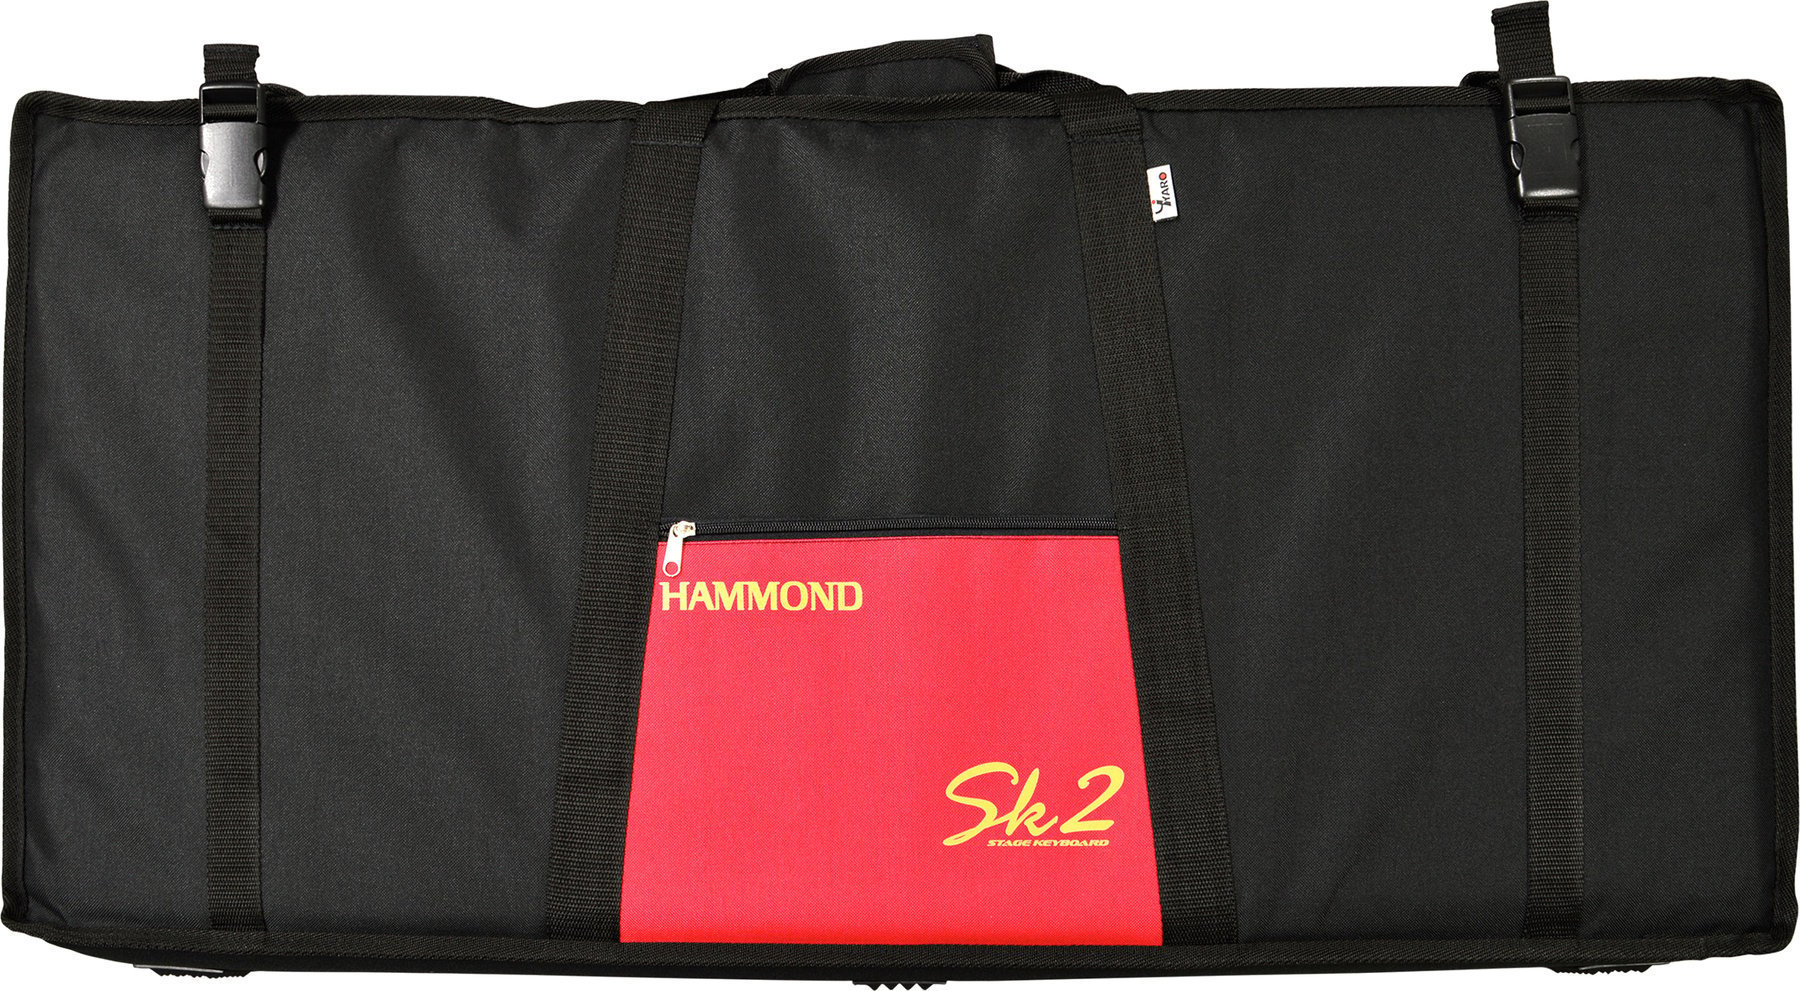 Kosketinsoitinlaukku Hammond Softbag SK2